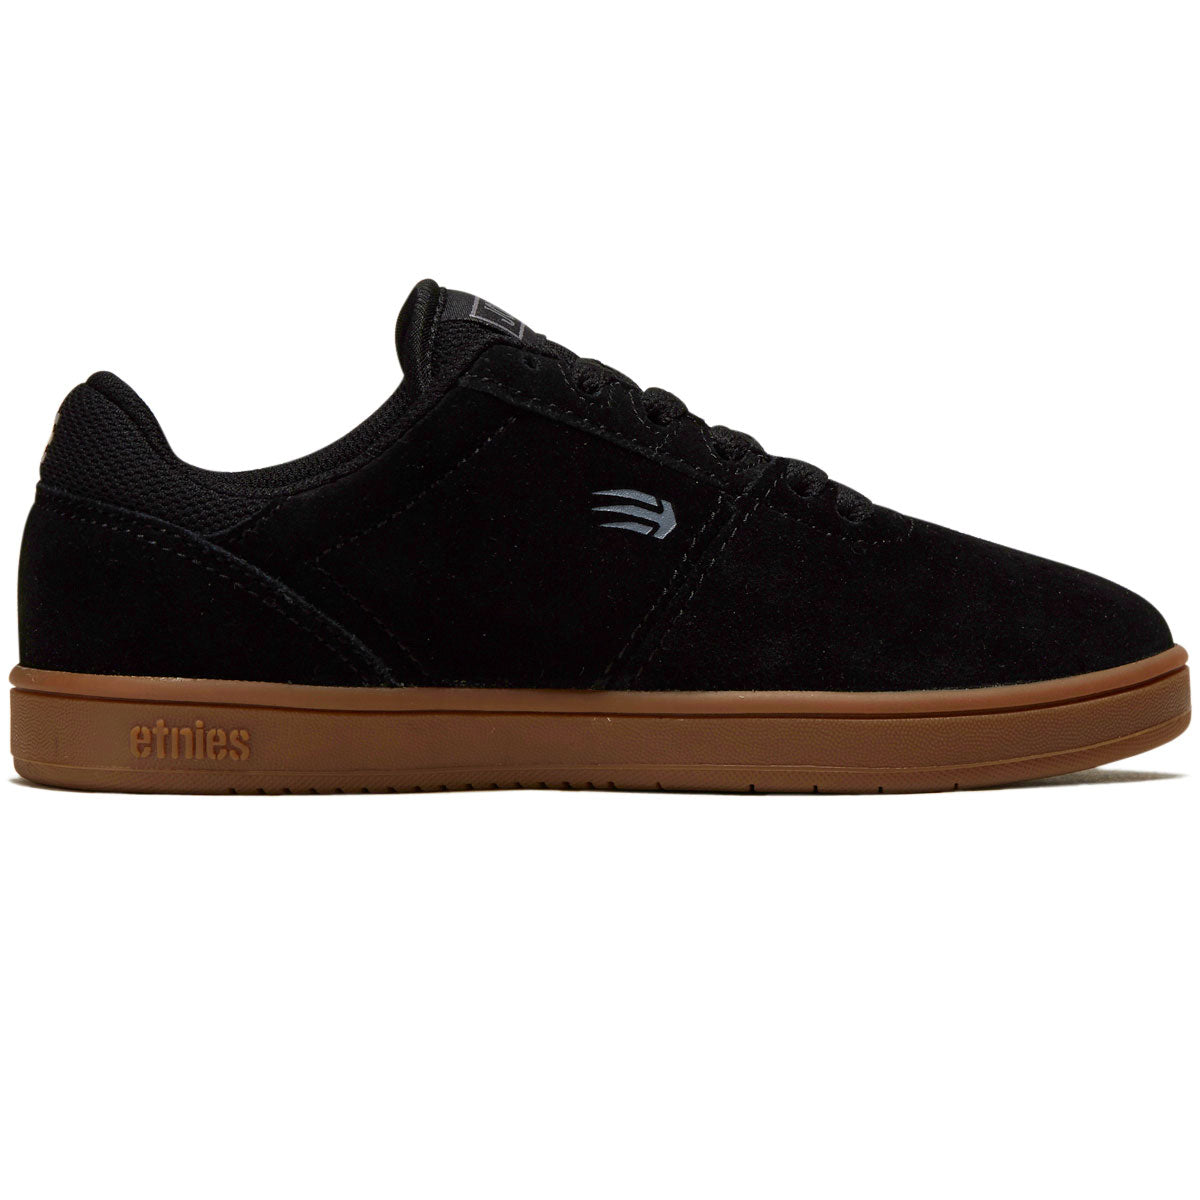 Etnies Youth Josl1n Shoes - Black/Gum image 1